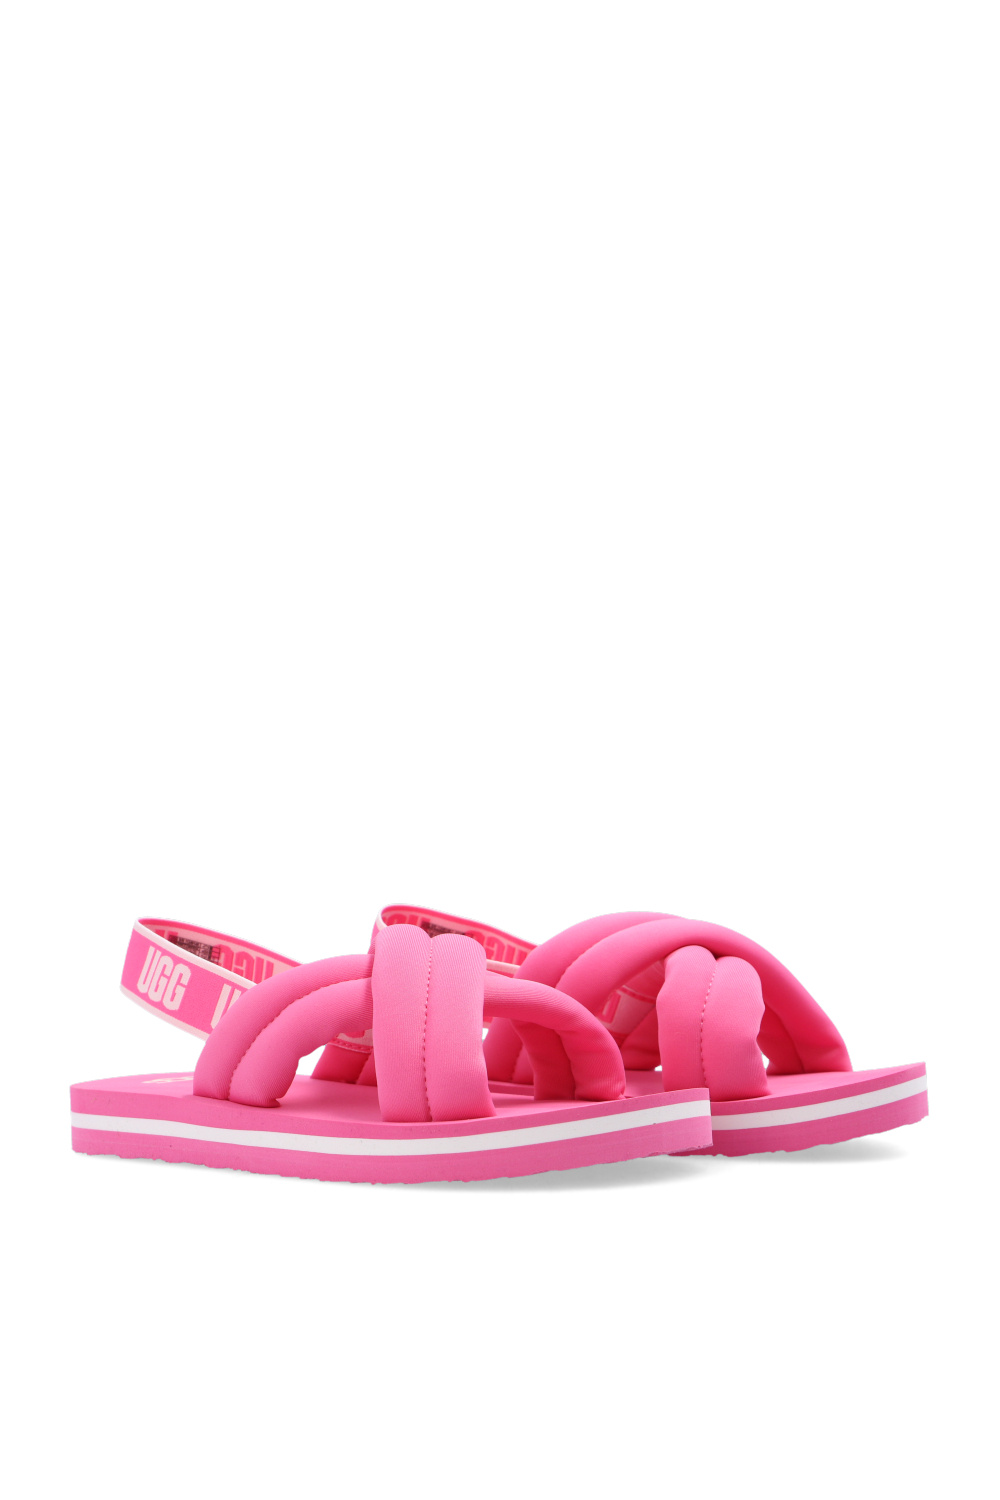 ugg model Kids ‘Everlee Slide’ sandals